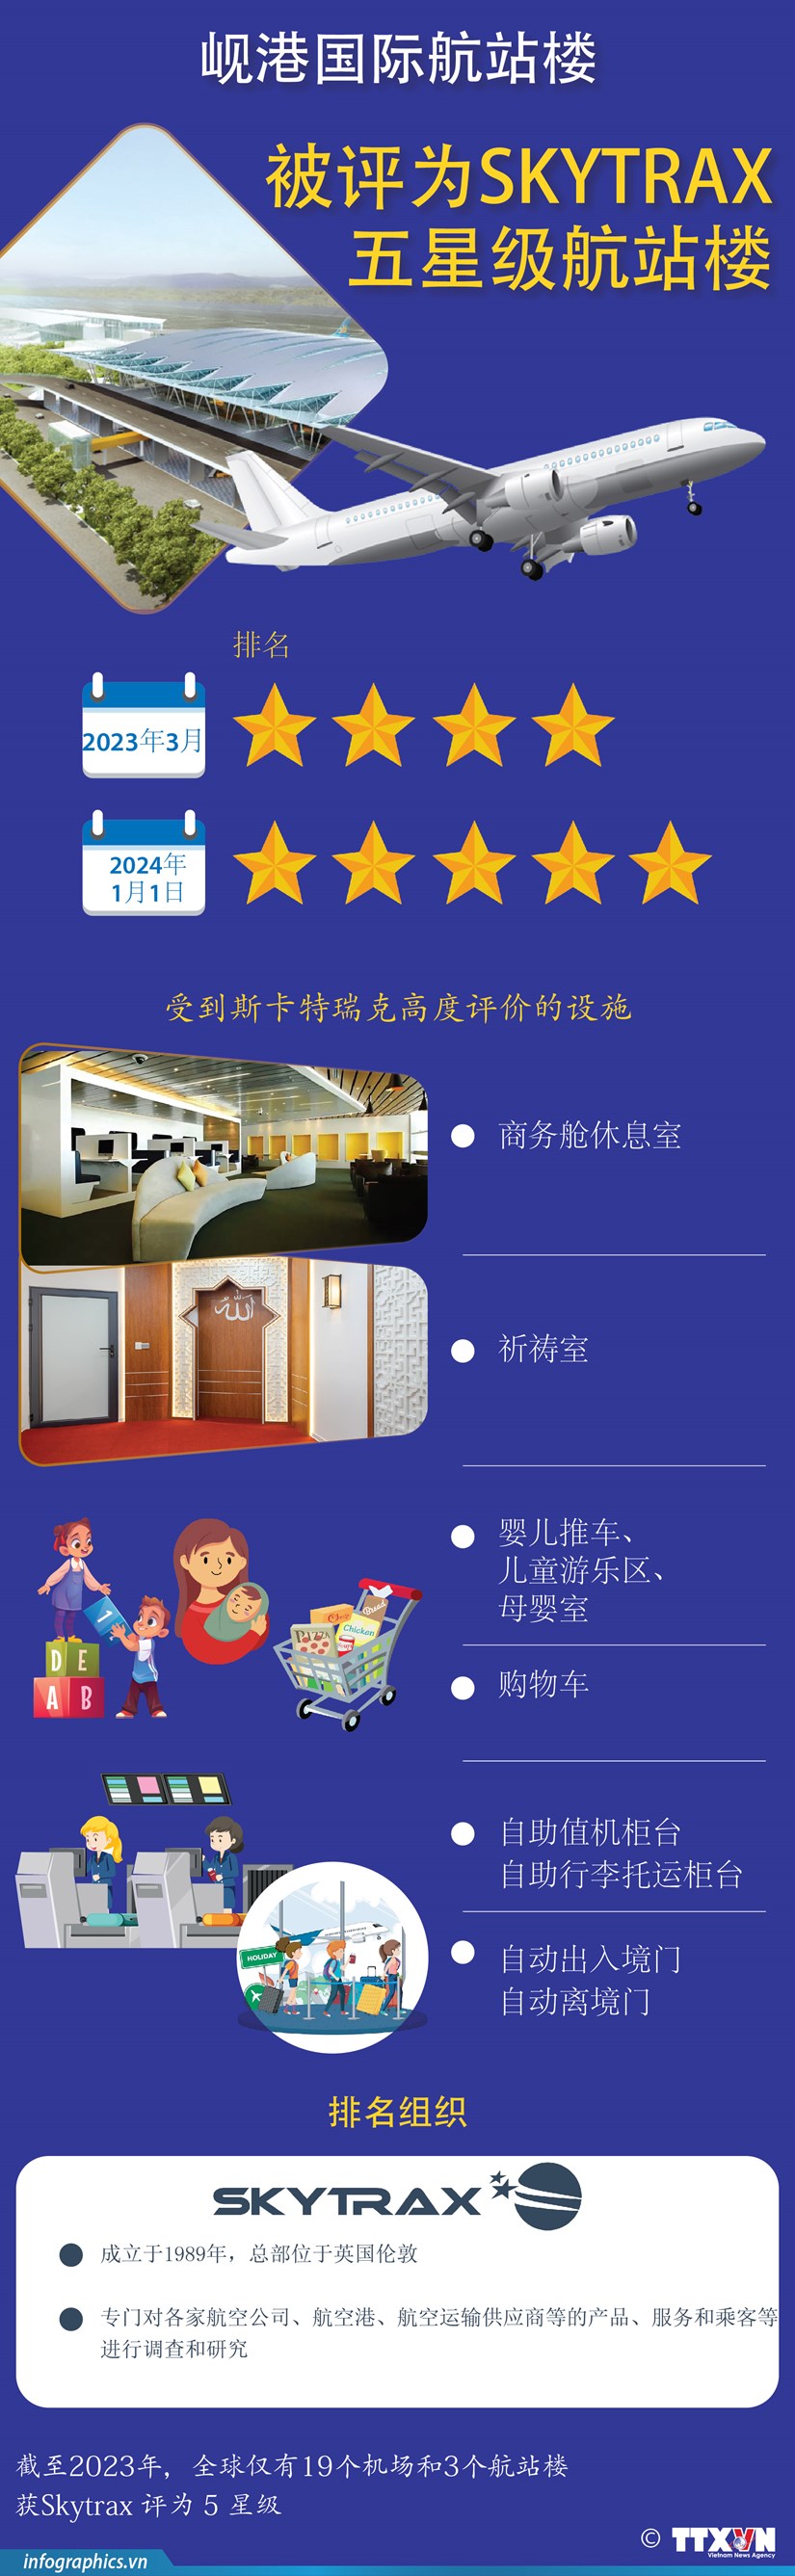 图表新闻：岘港国际航站楼被评为Skytrax五星级航站楼 hinh anh 1